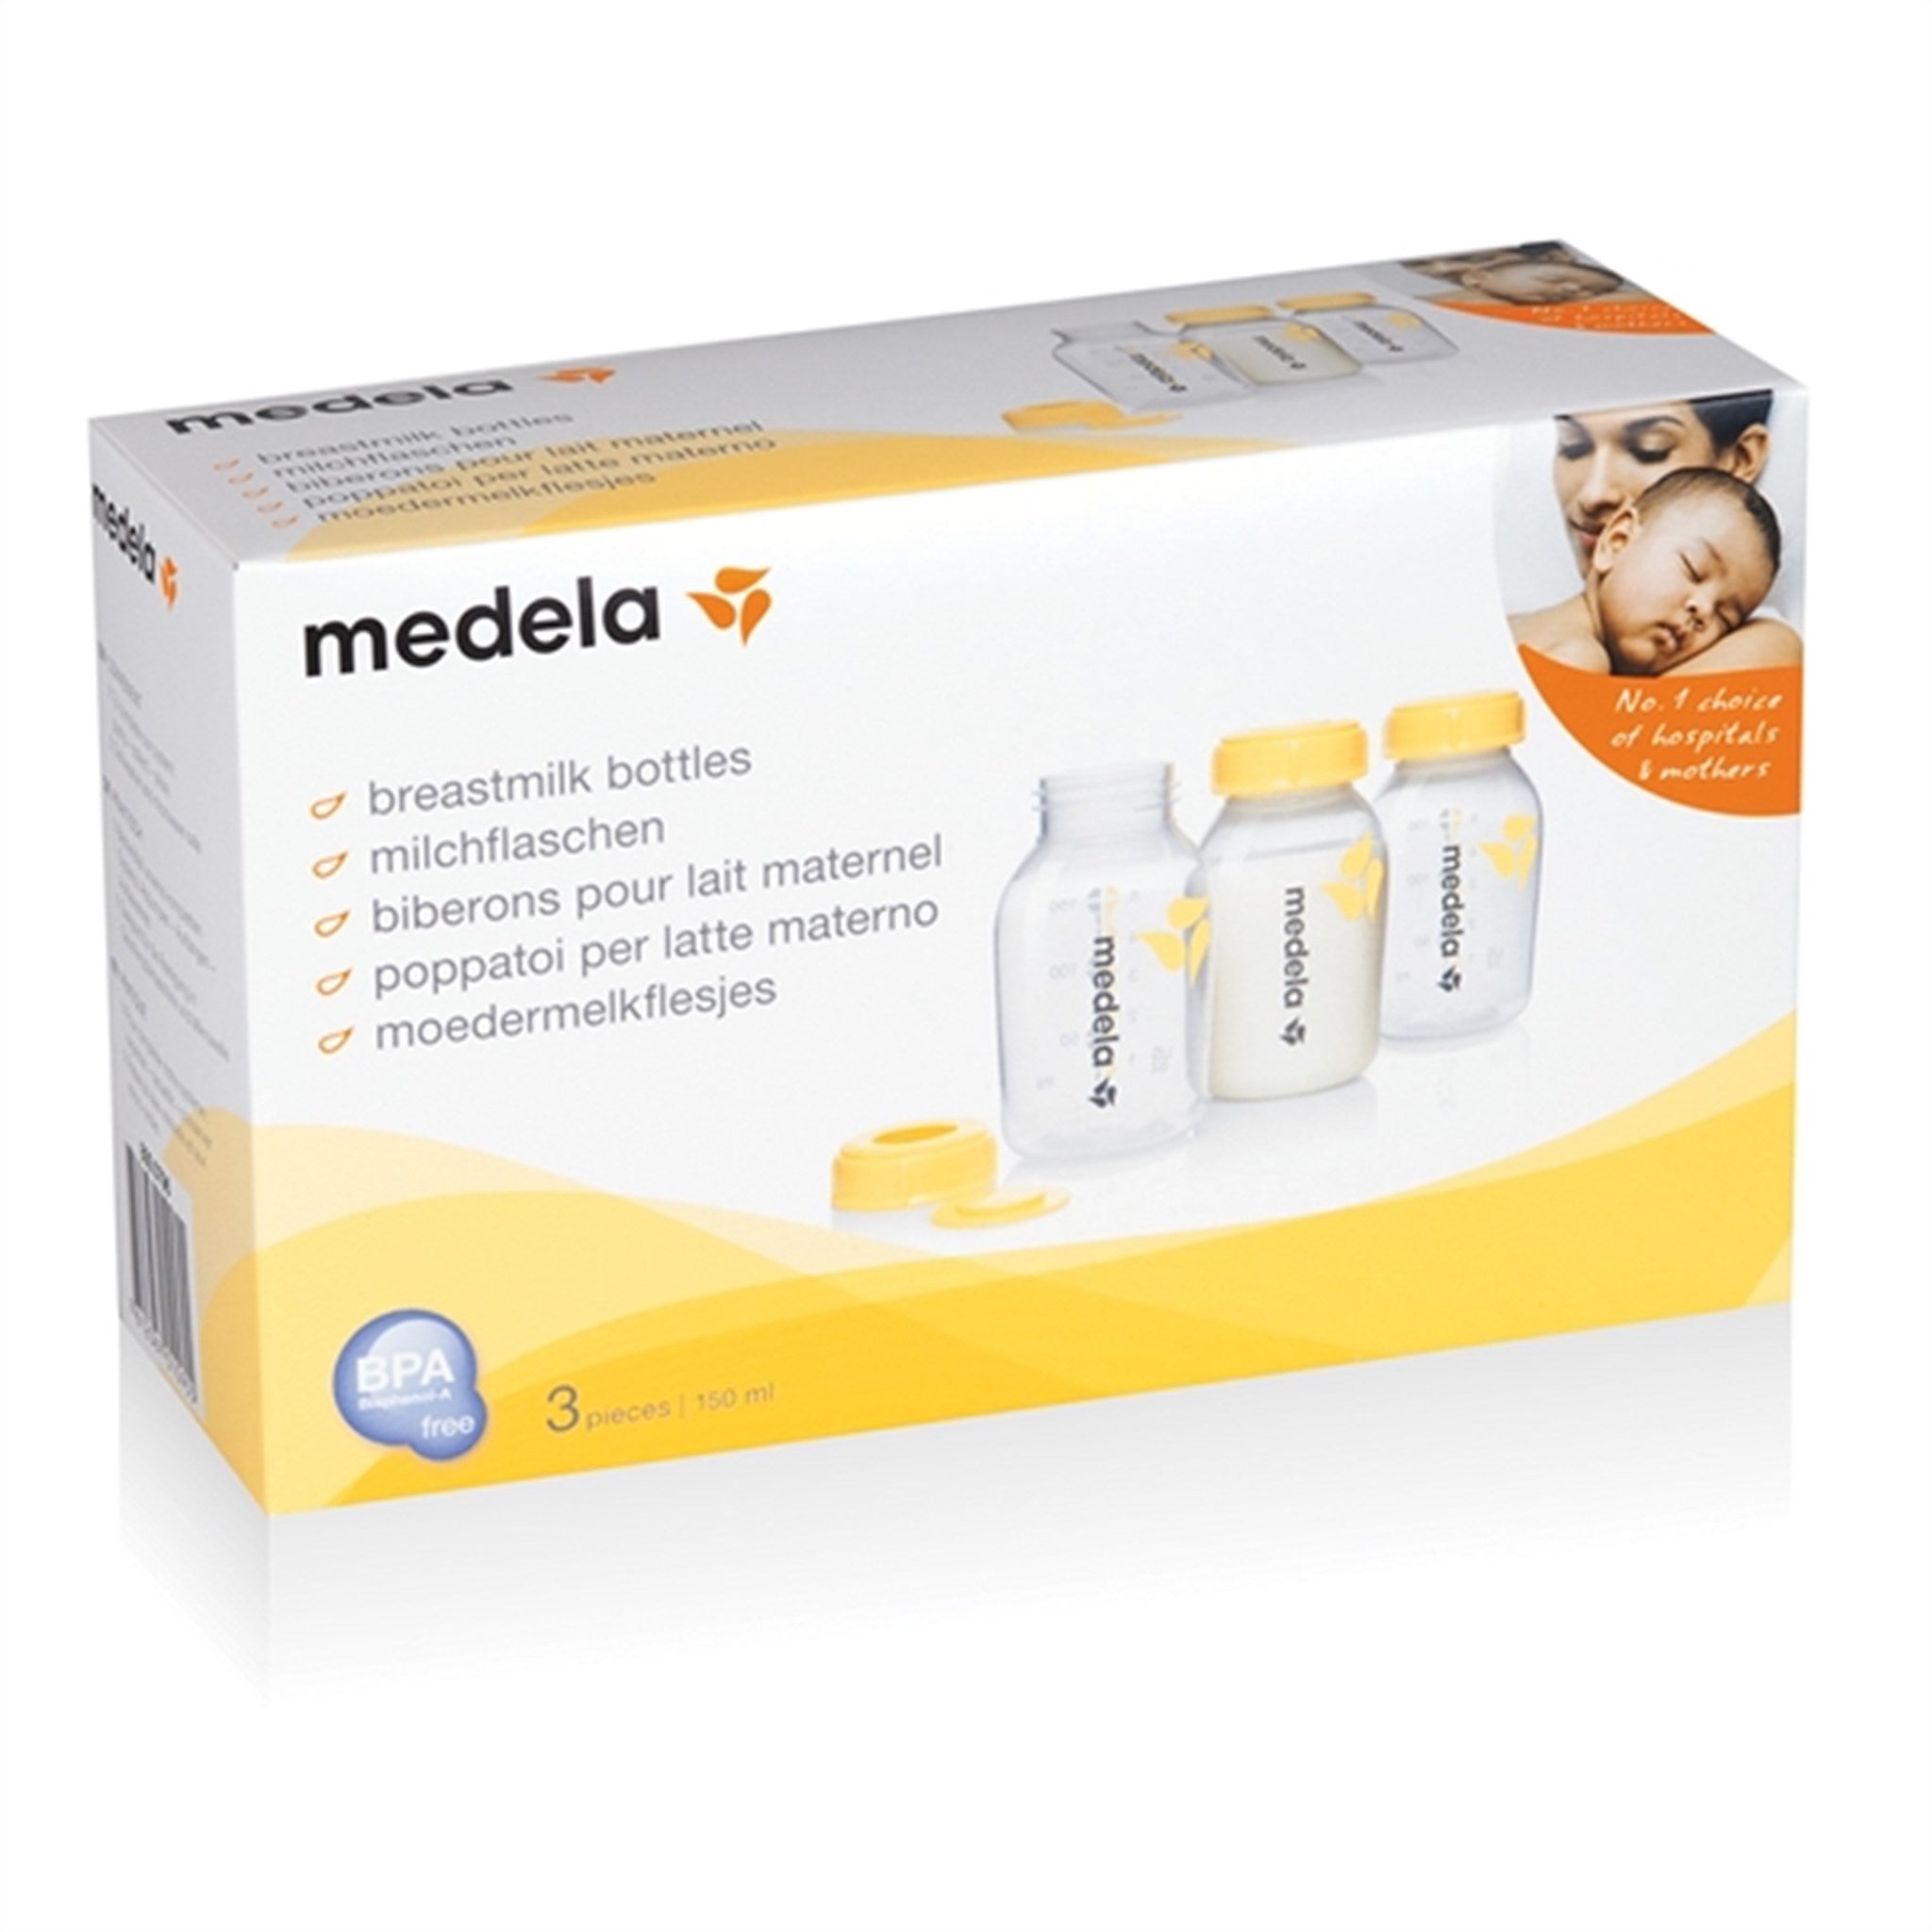 medela Bottles For Breast Milk 150 ml, 3-pack 2